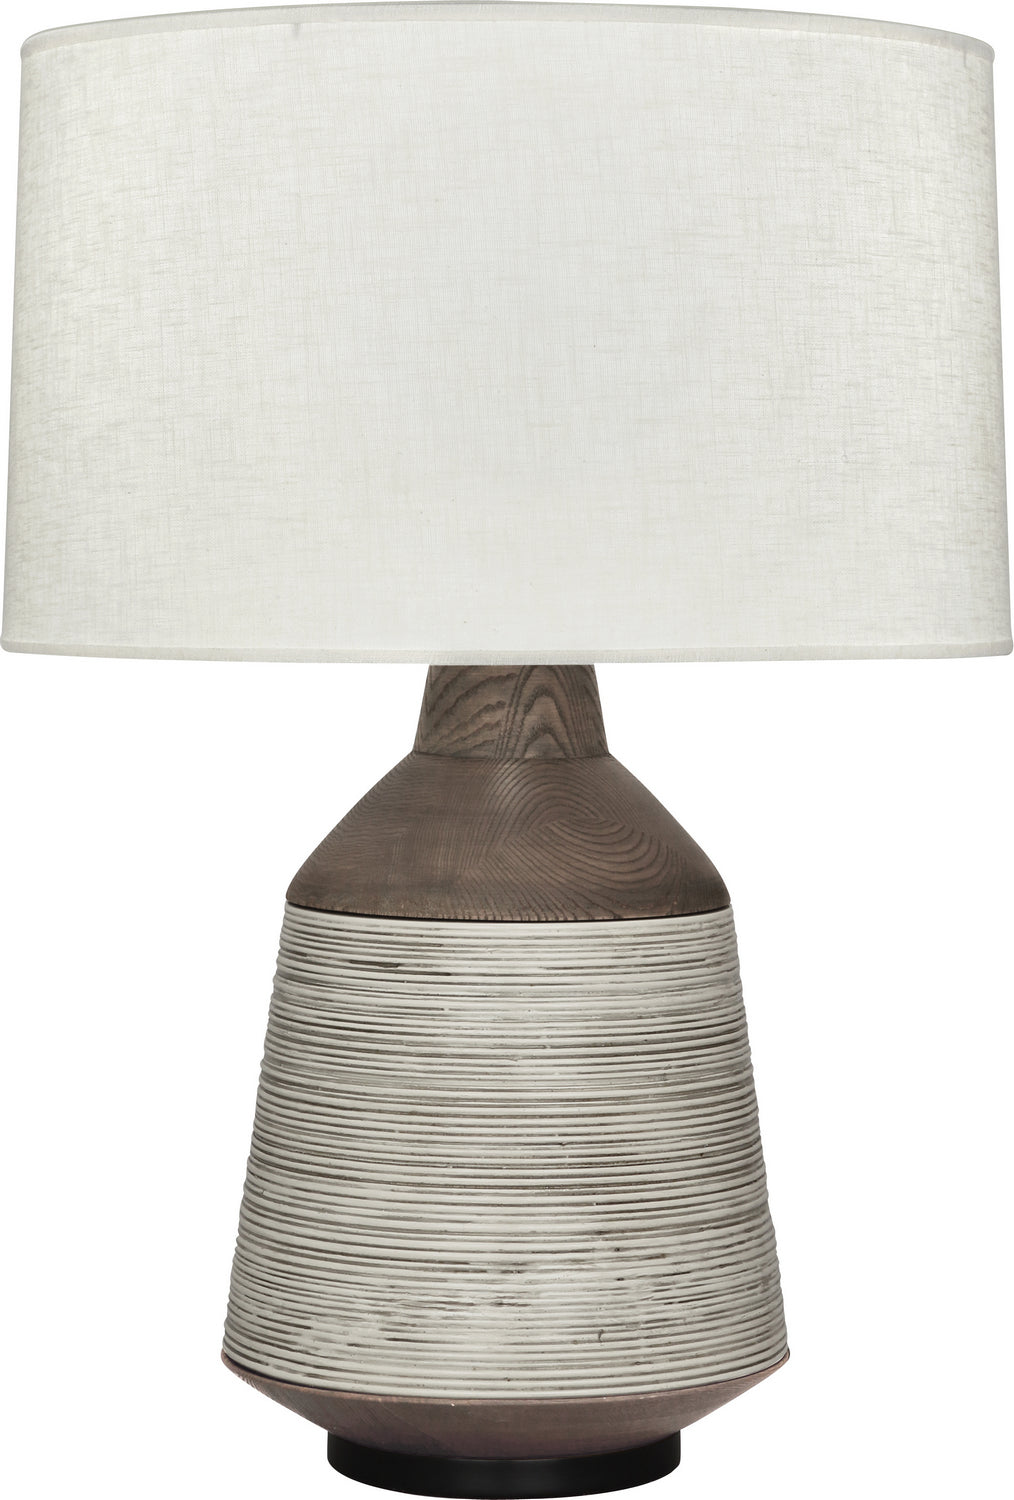 Michael Berman Berkley Table Lamp